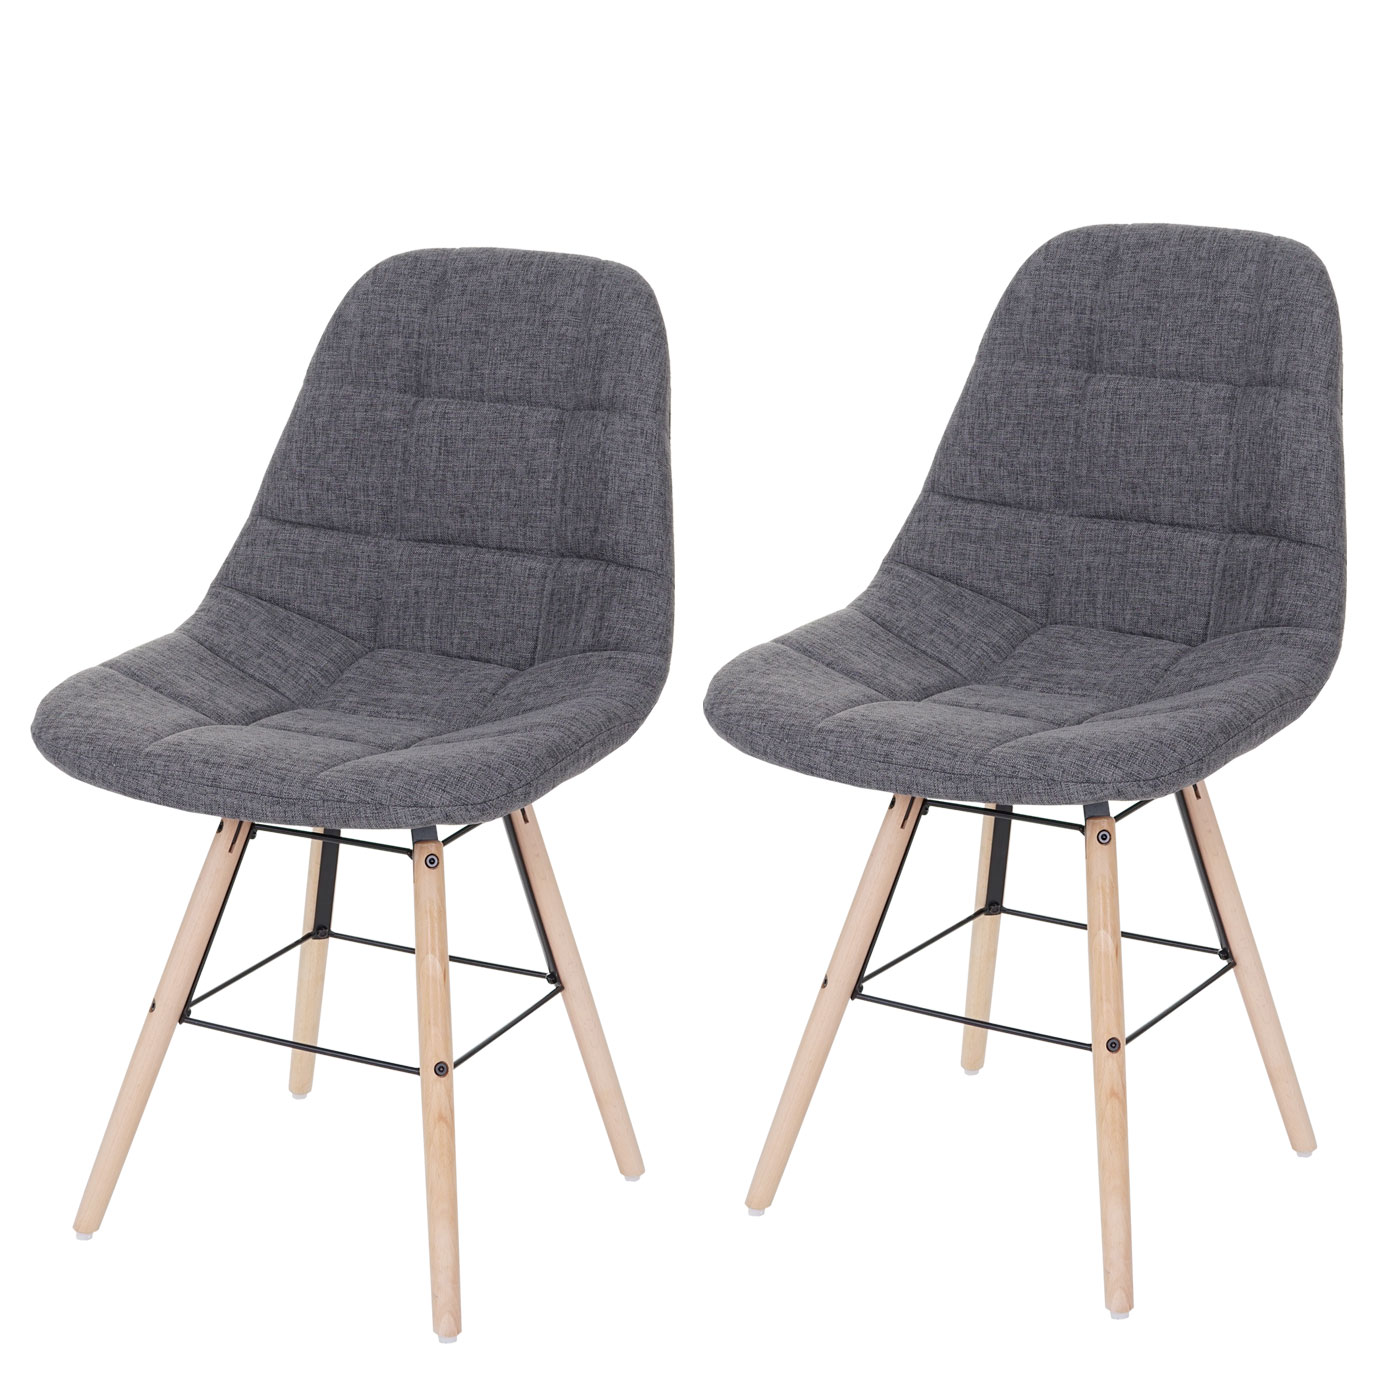 Retro 50er Jahre Design Textil Stuhl Esszimmerstuhl Vaasa T382 creme/grau  Home & Garden Chairs